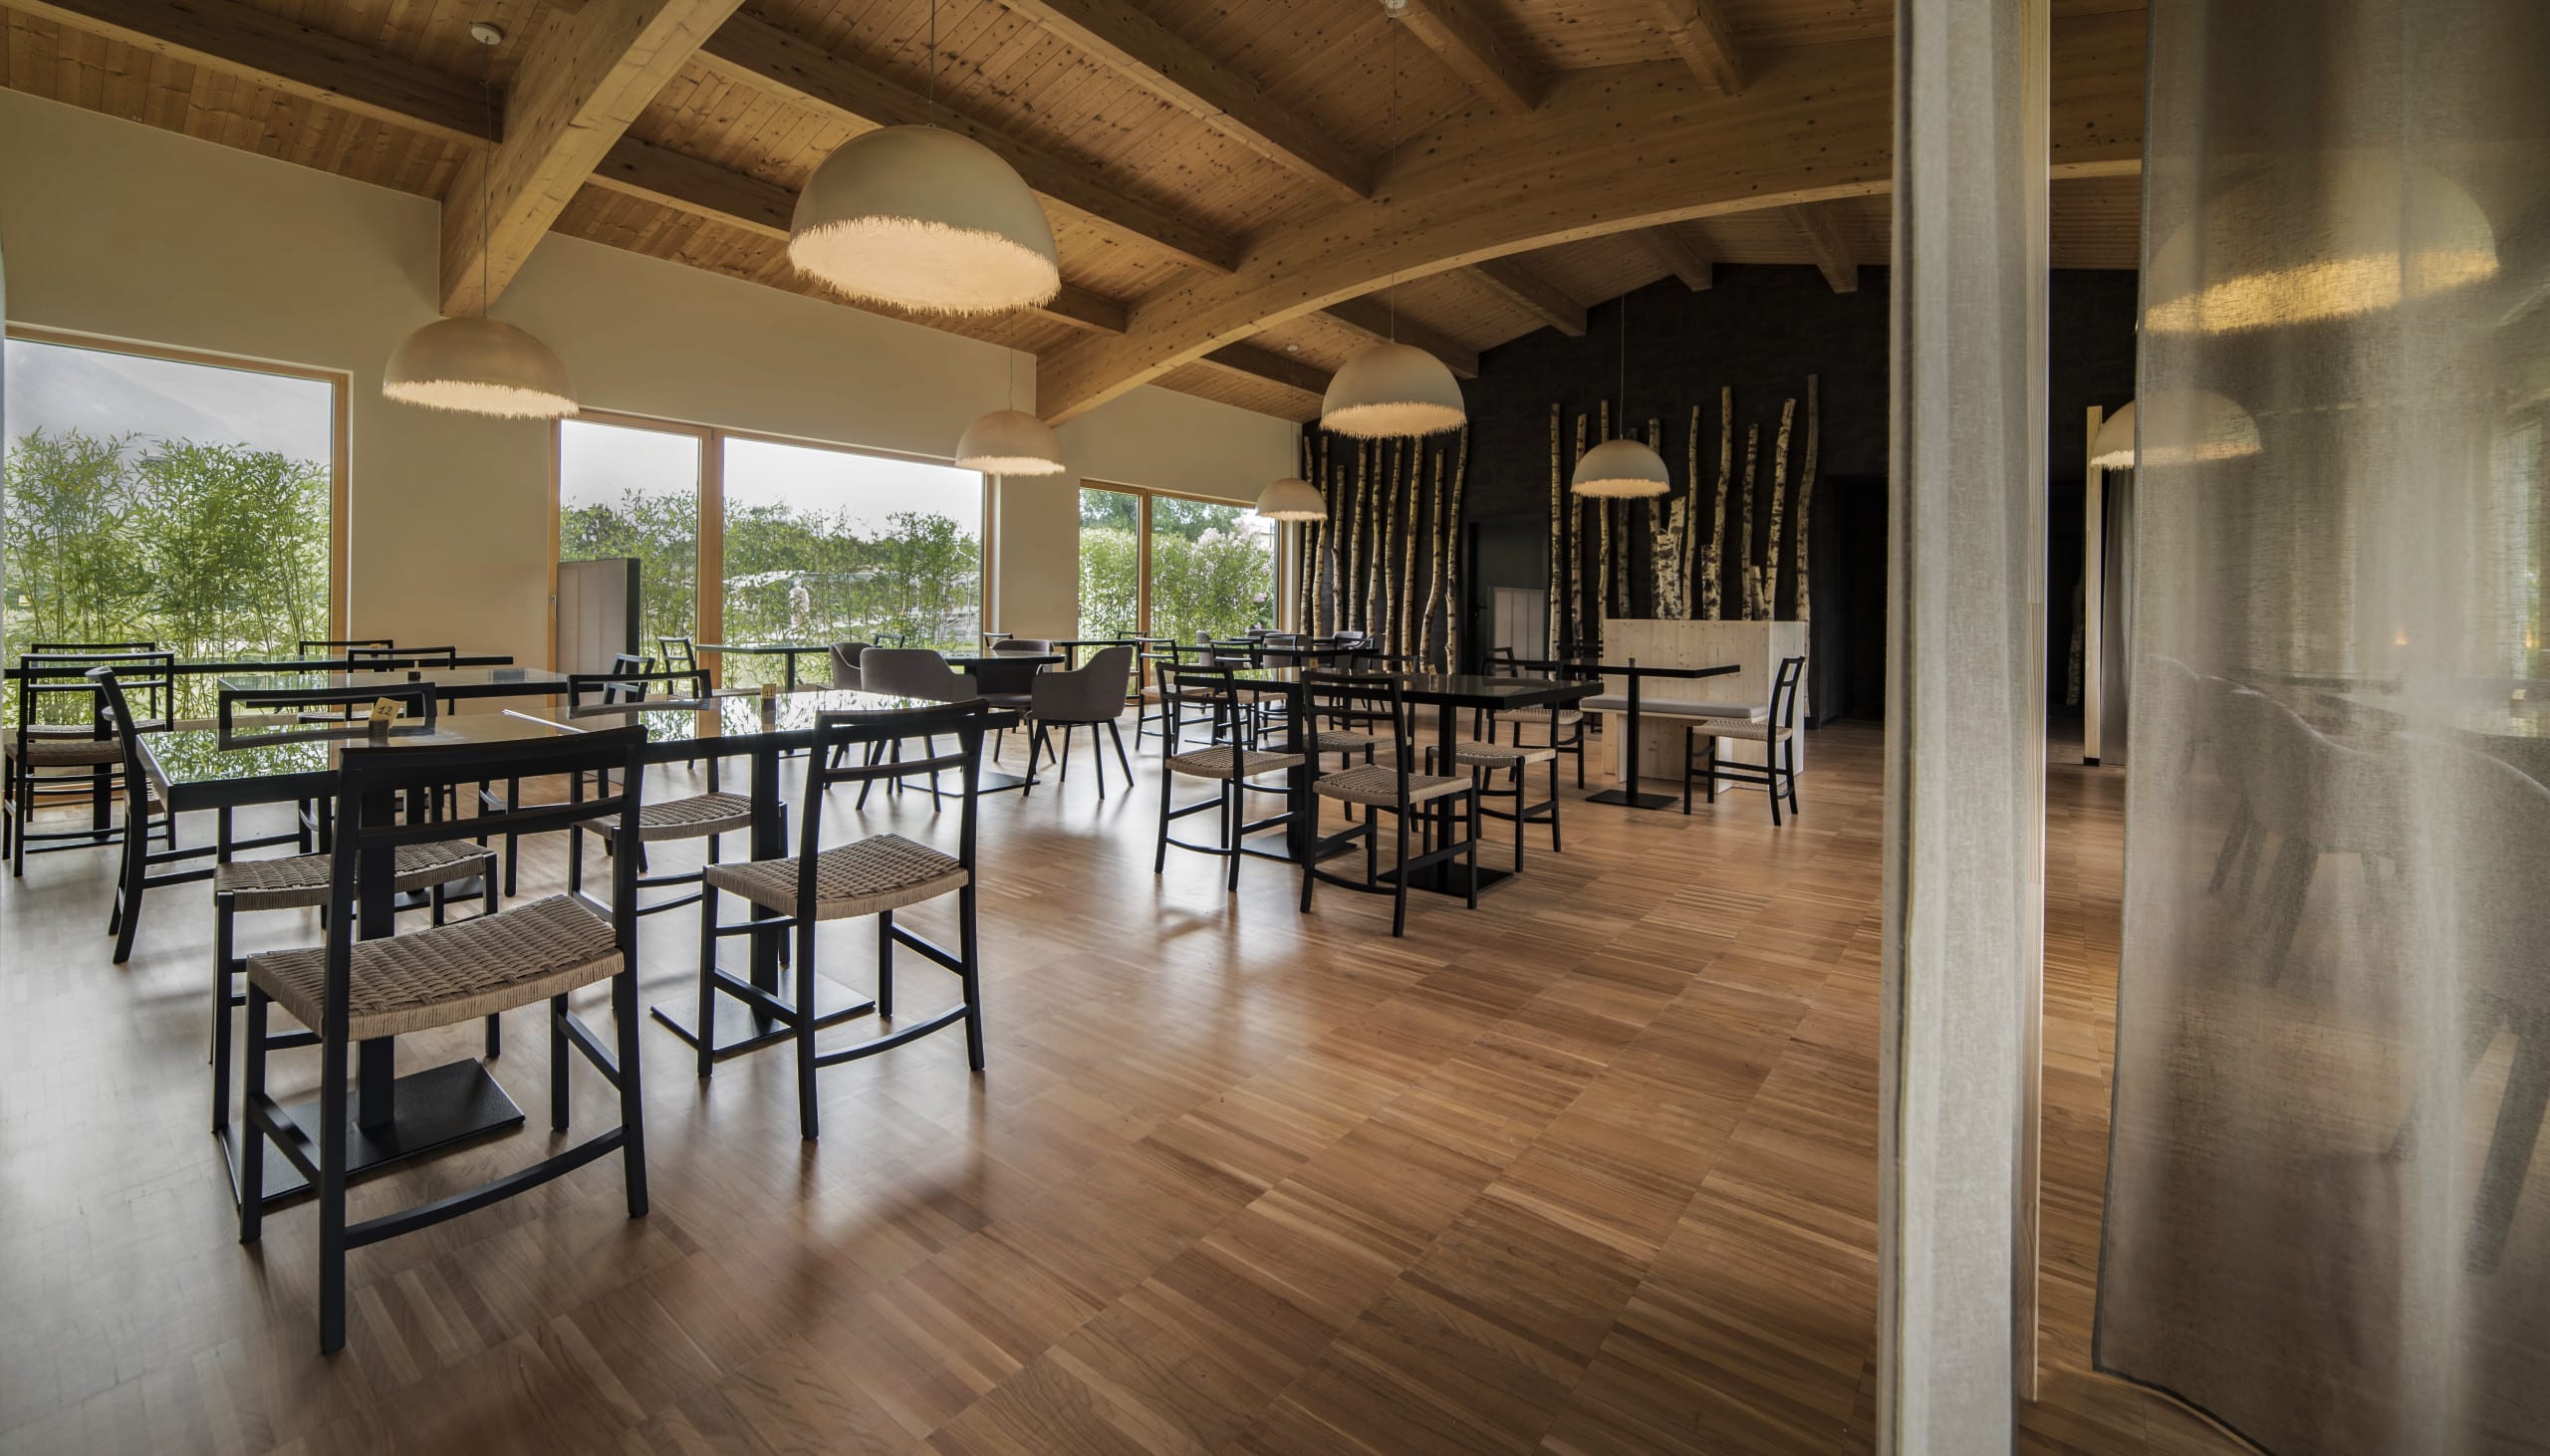 Architekt Rinaldo del Nero errichtete das Restaurant „Terra del Sole" und entschied sich bei der Wandgestaltung für CLAYTEC Produkte